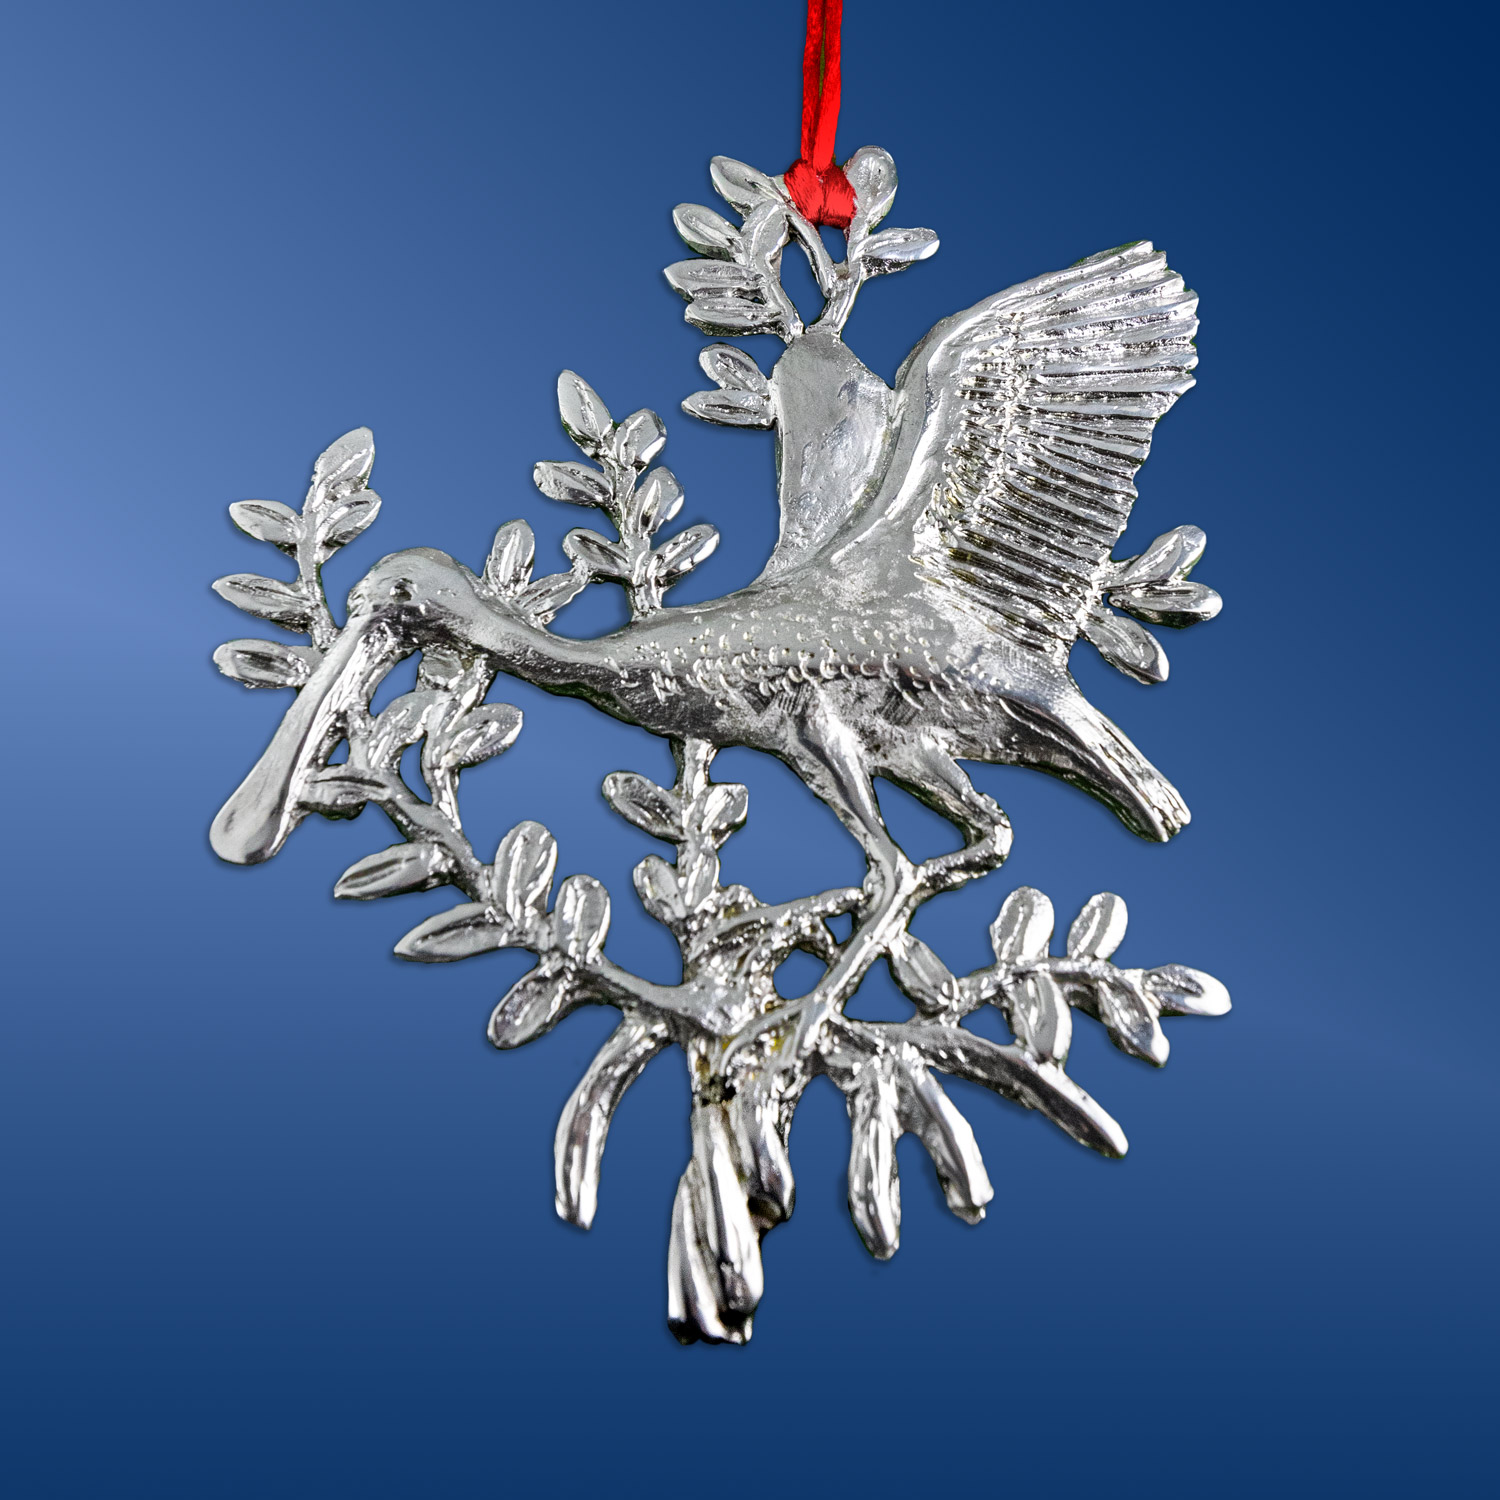 2020 Spoonbill Ornament